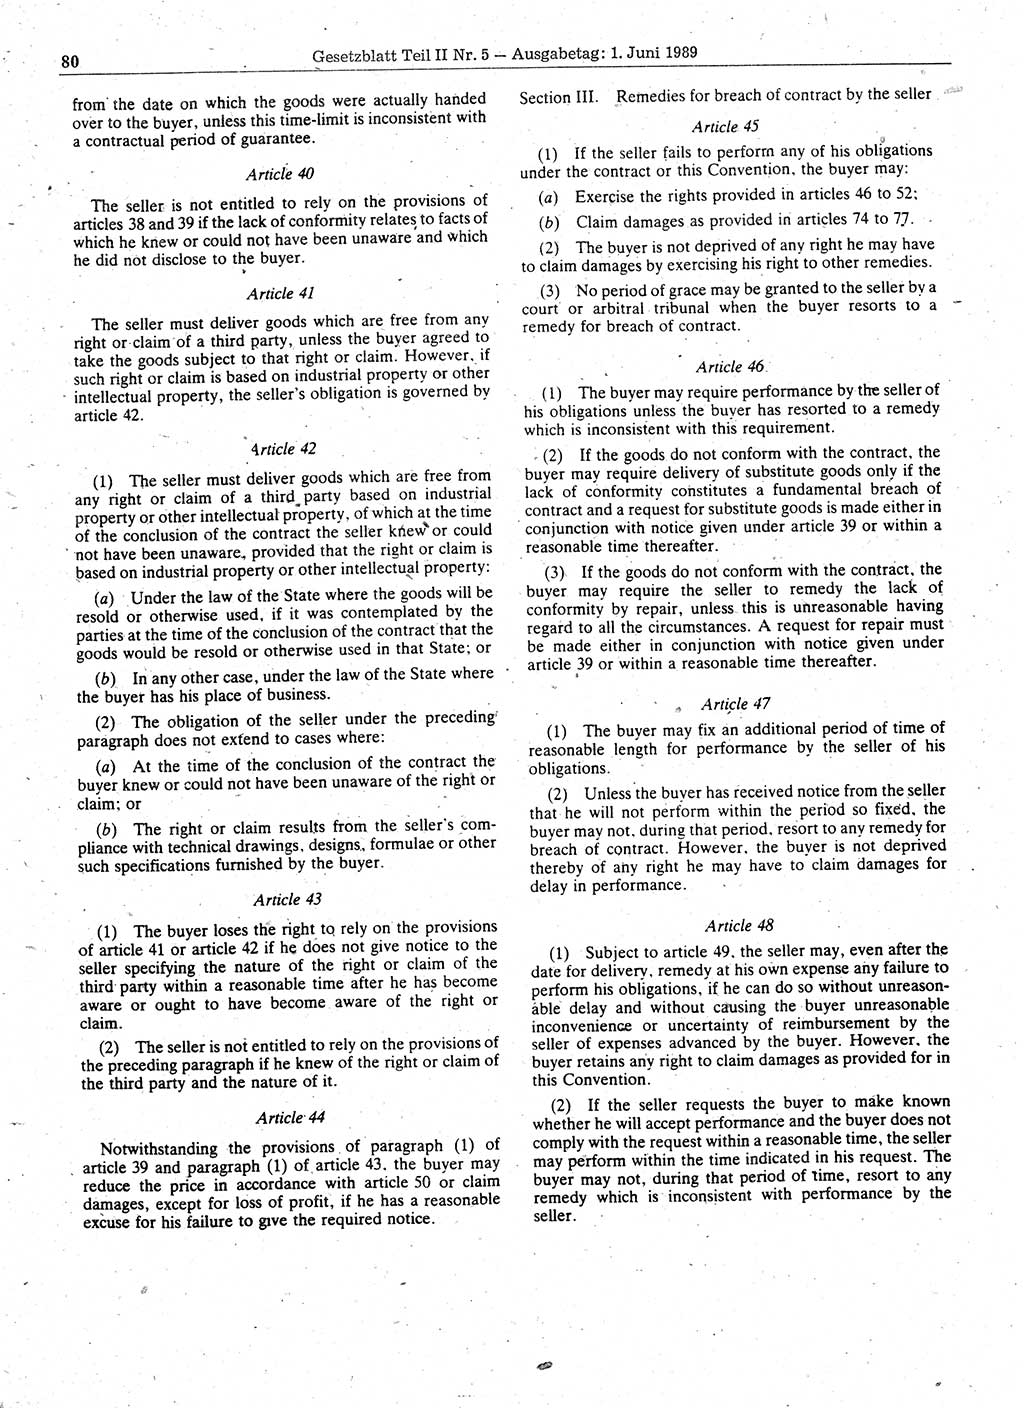 Gesetzblatt (GBl.) der Deutschen Demokratischen Republik (DDR) Teil ⅠⅠ 1989, Seite 80 (GBl. DDR ⅠⅠ 1989, S. 80)